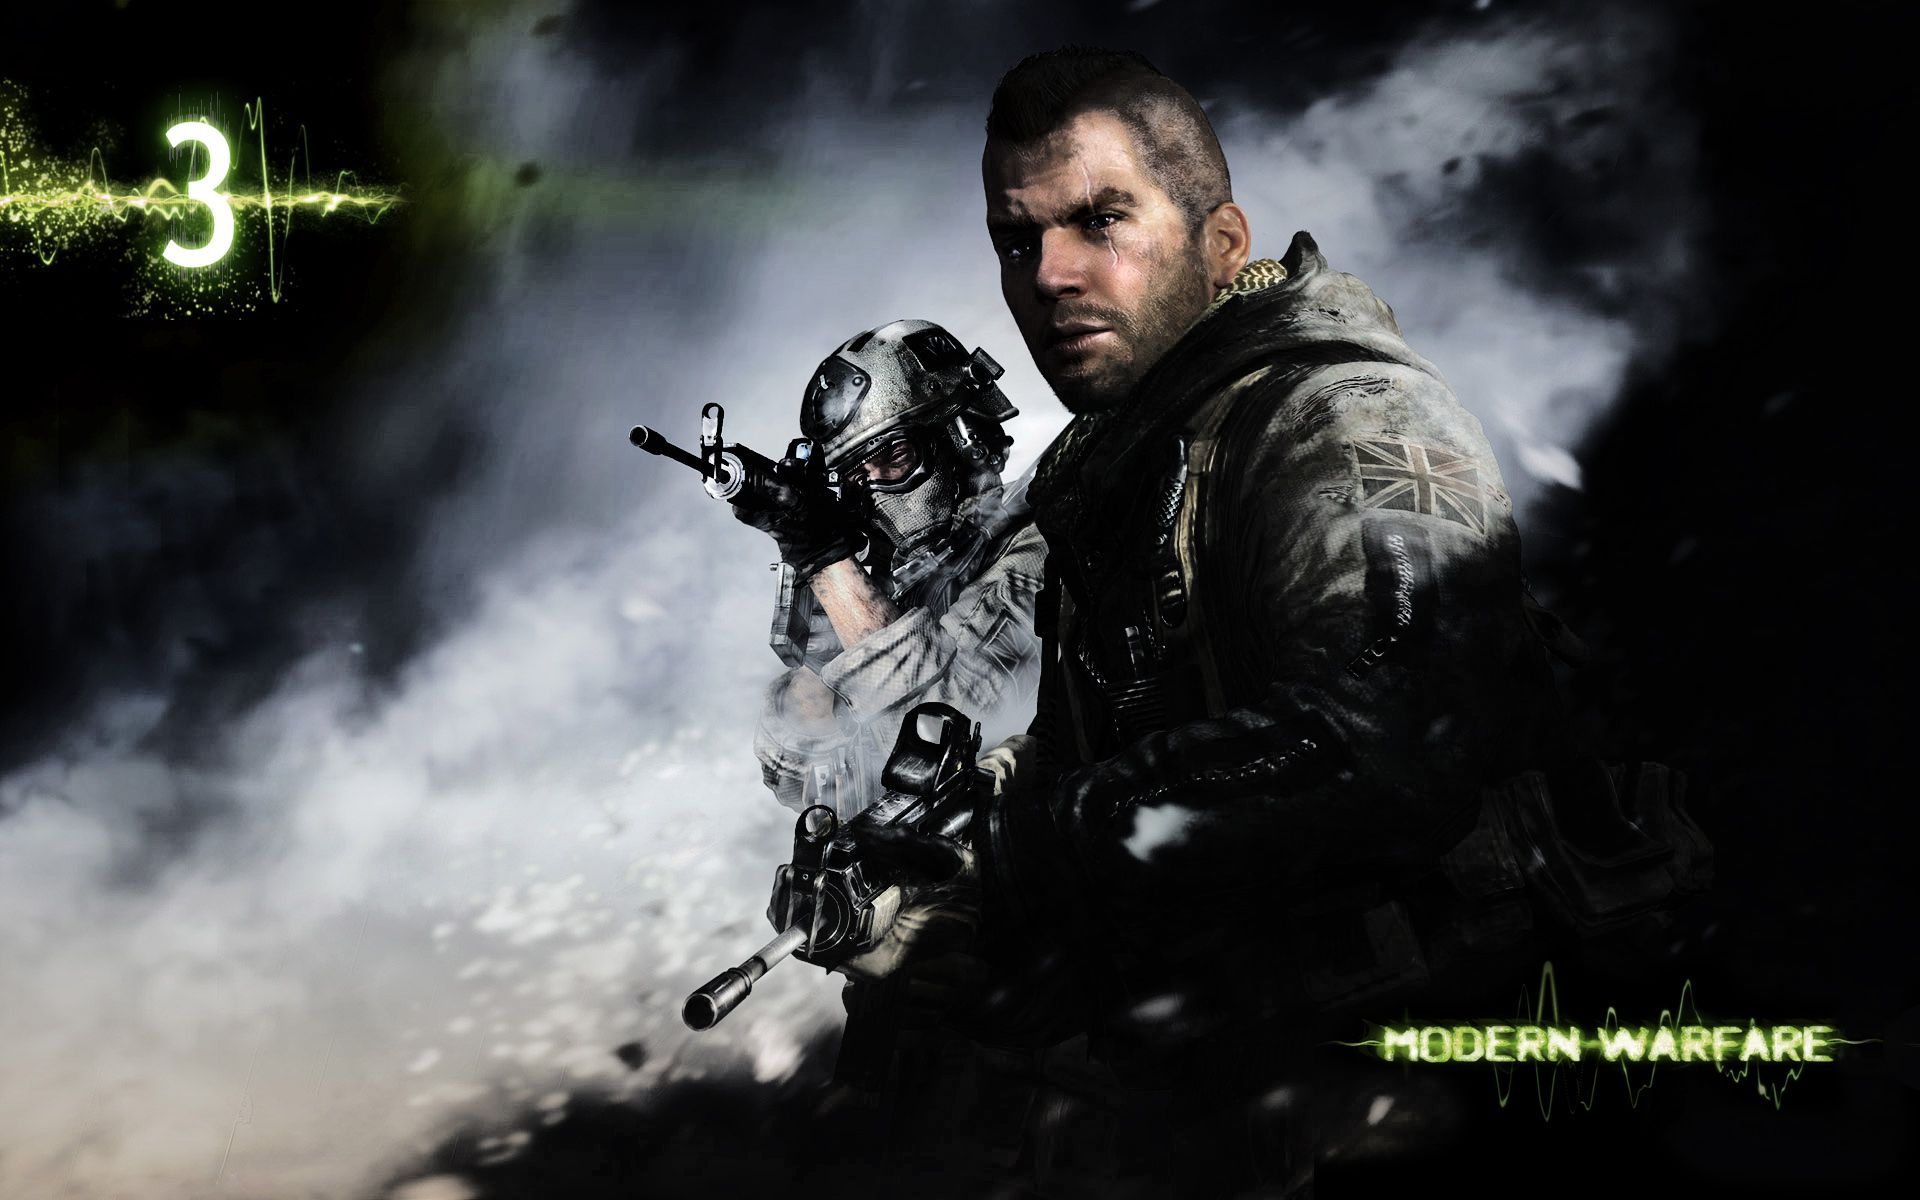 mw3 wallpapers - Modern Warfare 3 Wallpaper (24417409) - Fanpop